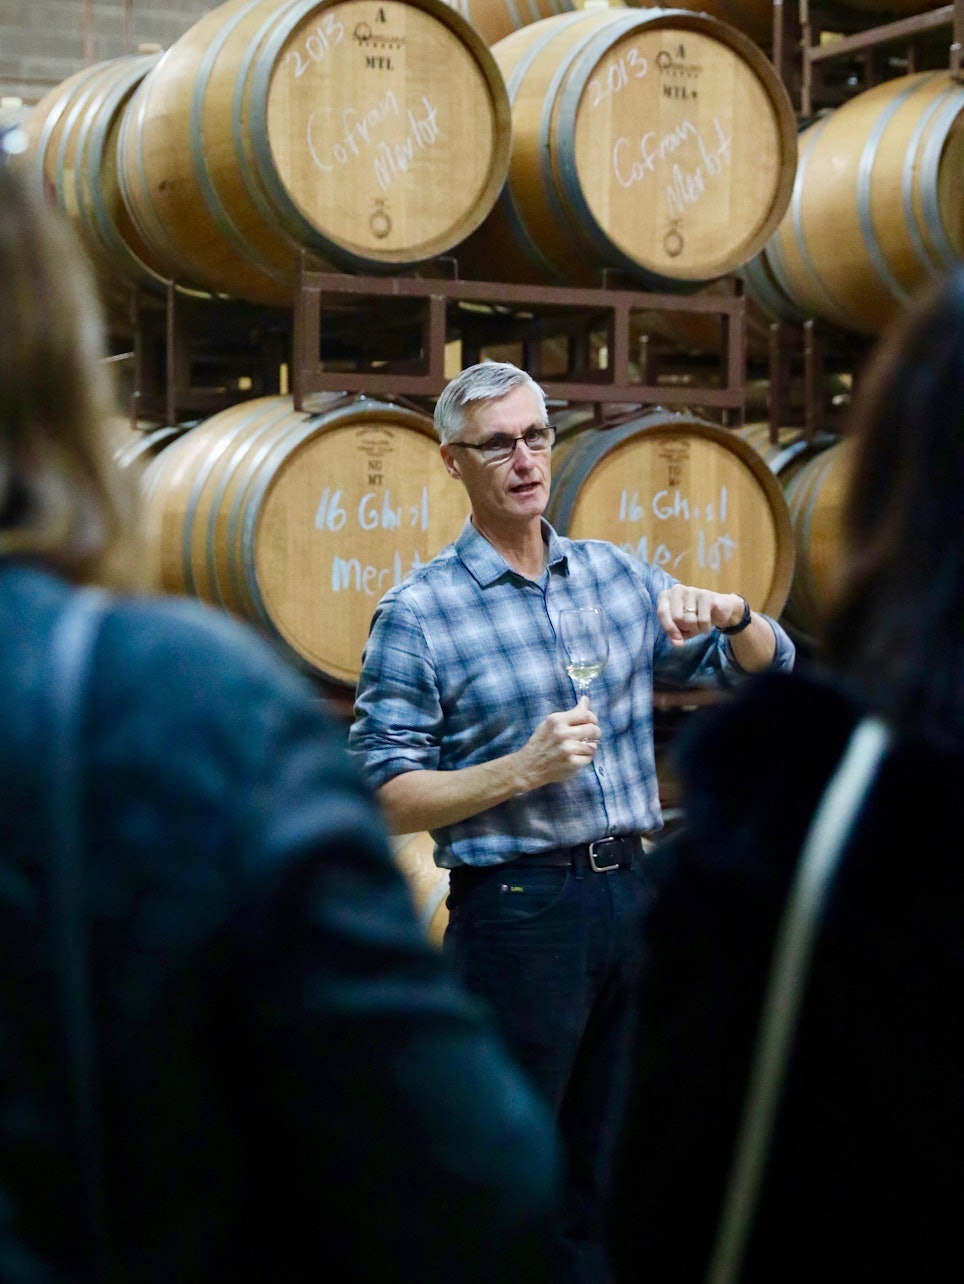 País do Vinho: Tour de São Francisco com degustação de vinho - Acomodações em São Francisco